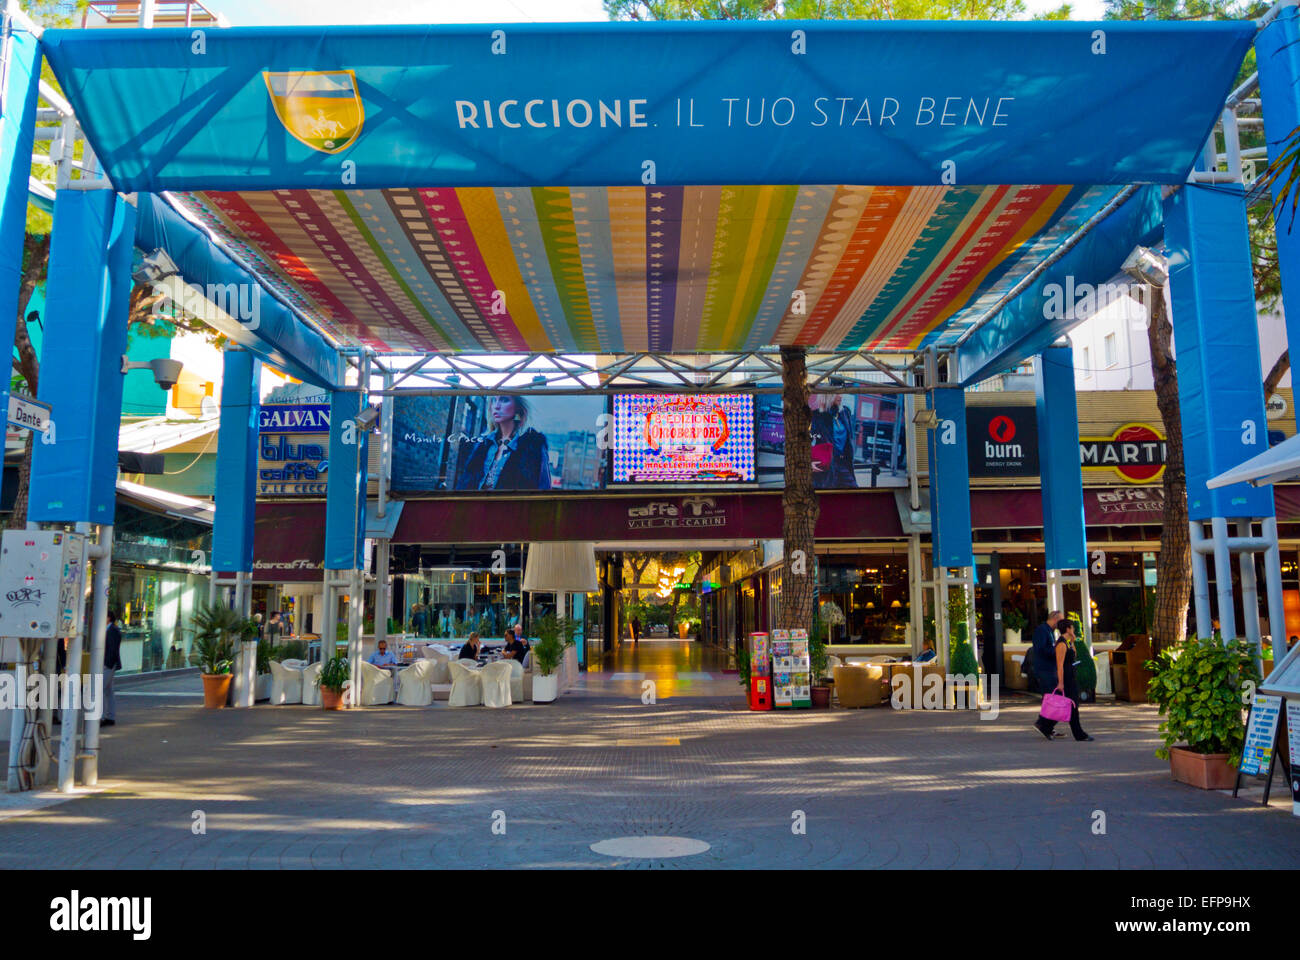 Centro per lo shopping in Viale Ceccarini strada pedonale dello shopping,  Riccione, resort vicino a Rimini, Emilia Romagna, Italia centrale Foto  stock - Alamy